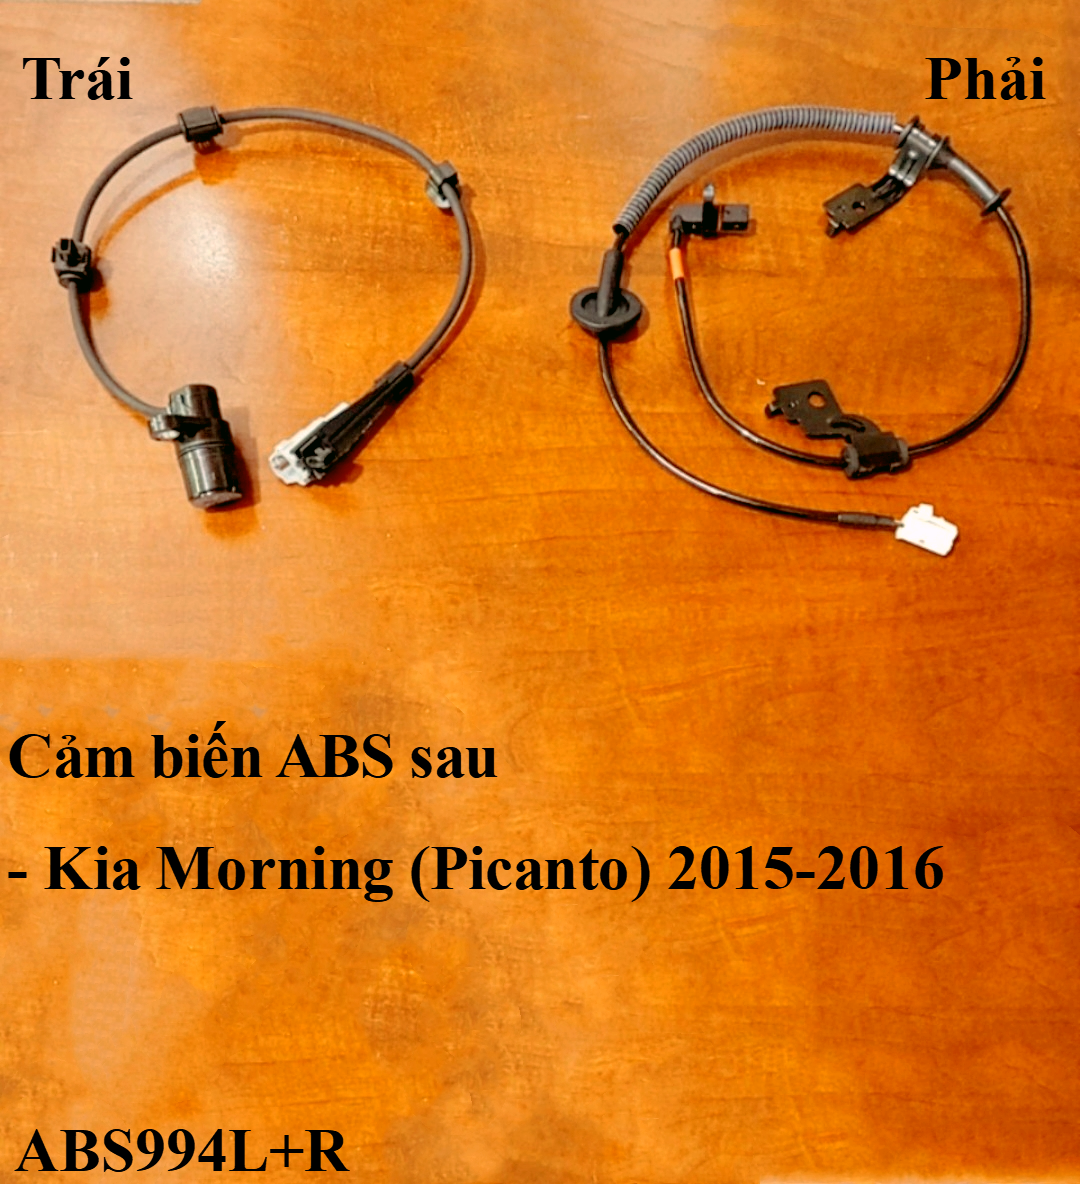 Cảm biến ABS sau, trái + phải Kia Morning (Picanto) 2015-2016